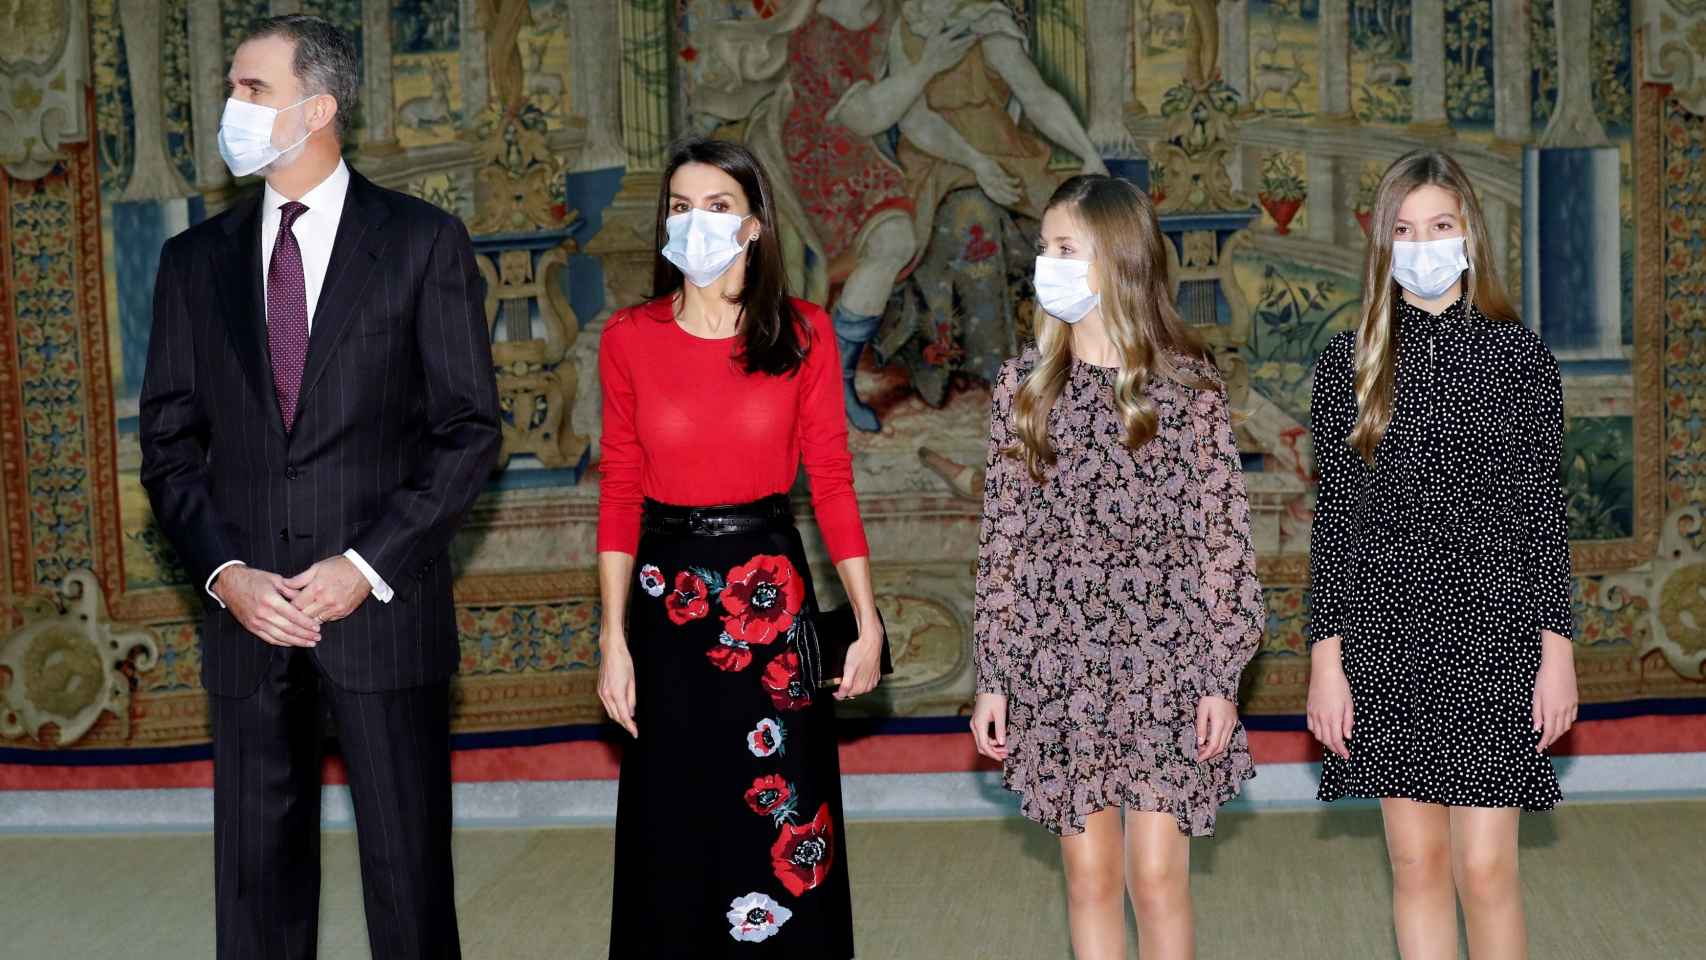 Los Reyes Felipe VI y Letizia, junto a sus hijas, durante la reunión del patronato de la Fundación Princesa de Girona.